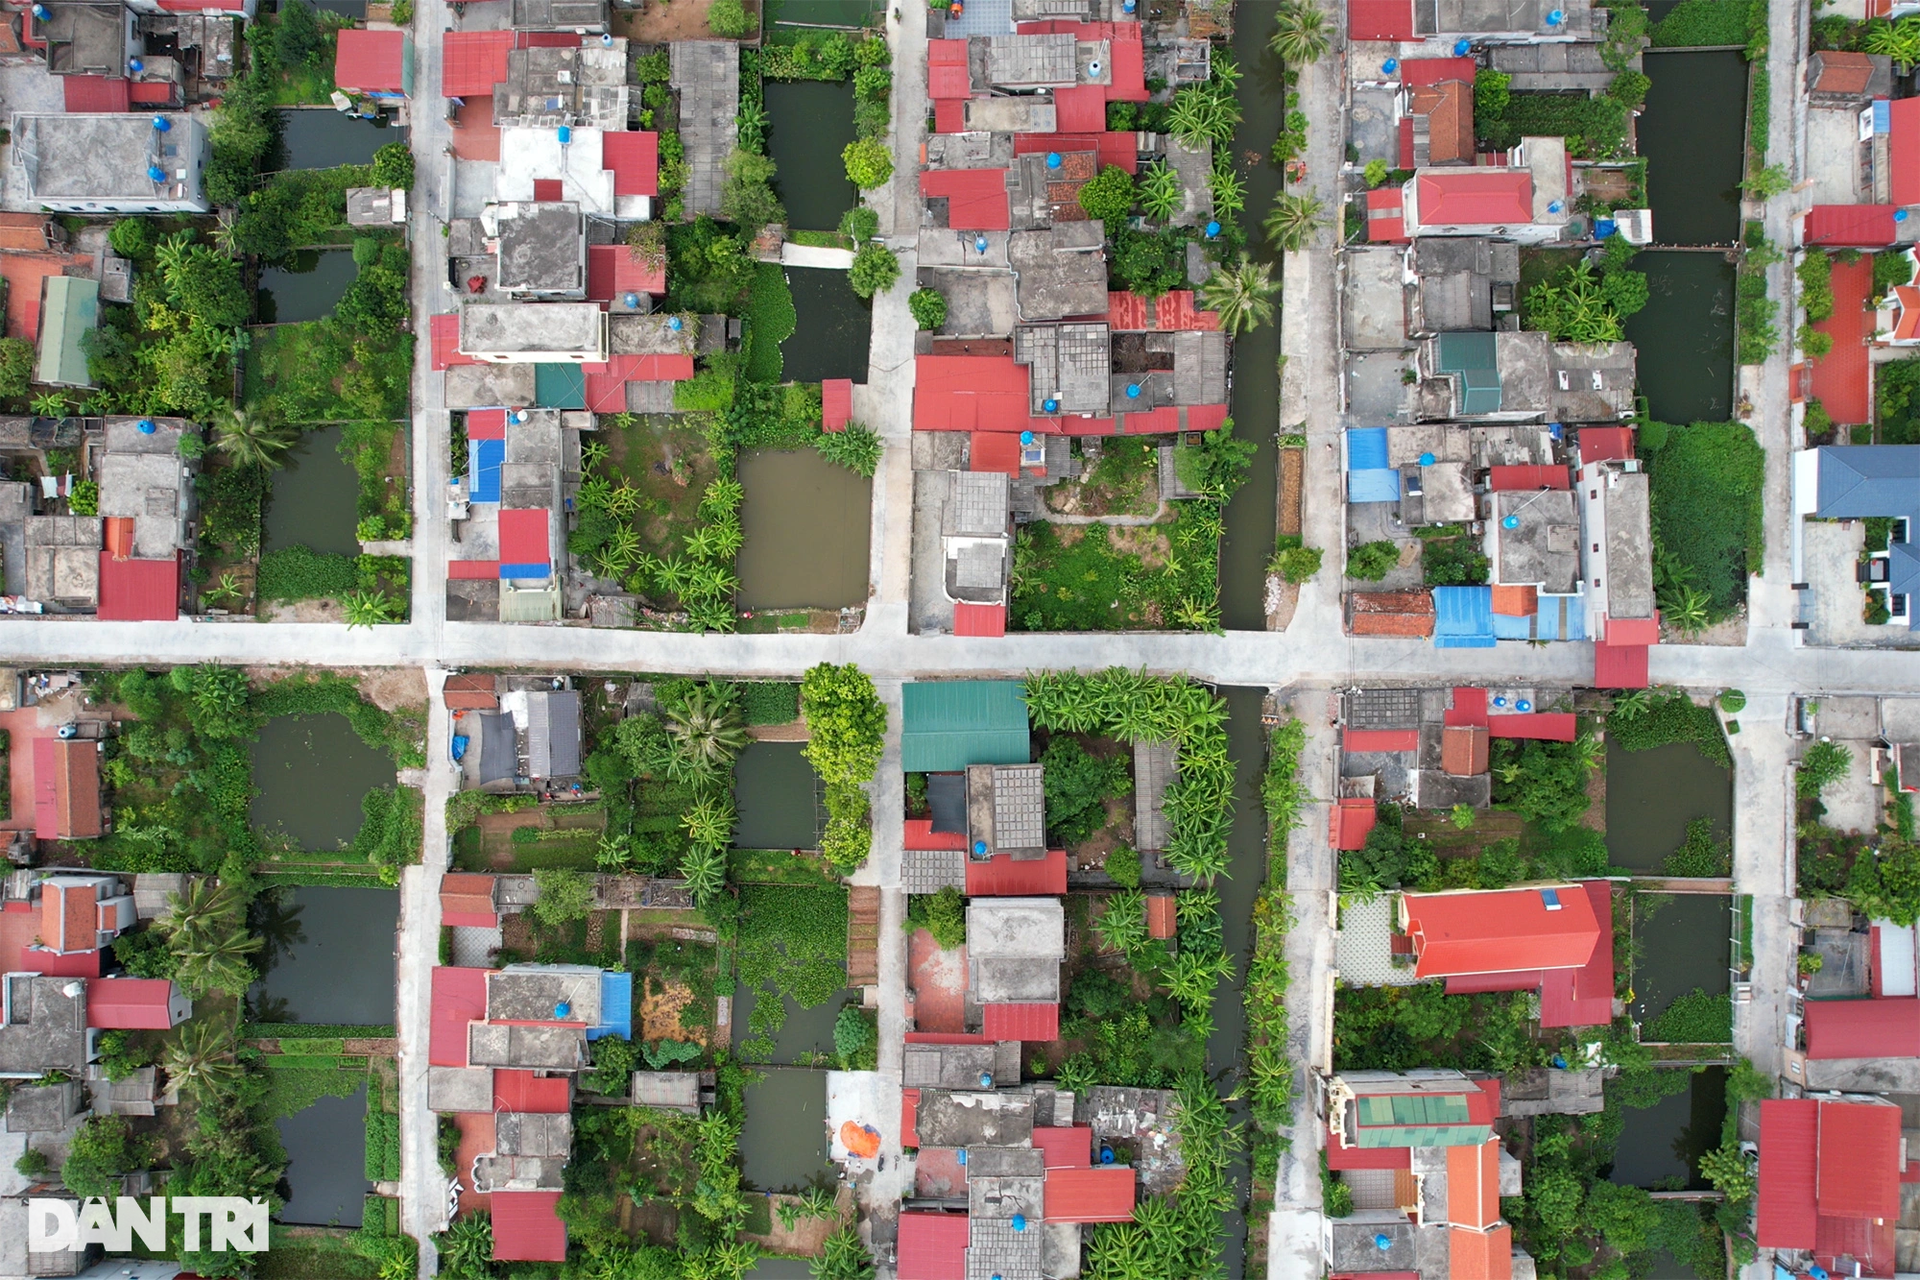 Quy hoạch bàn cờ khu dân cư đẹp như tranh ở làng ven biển Thái Bình - 4